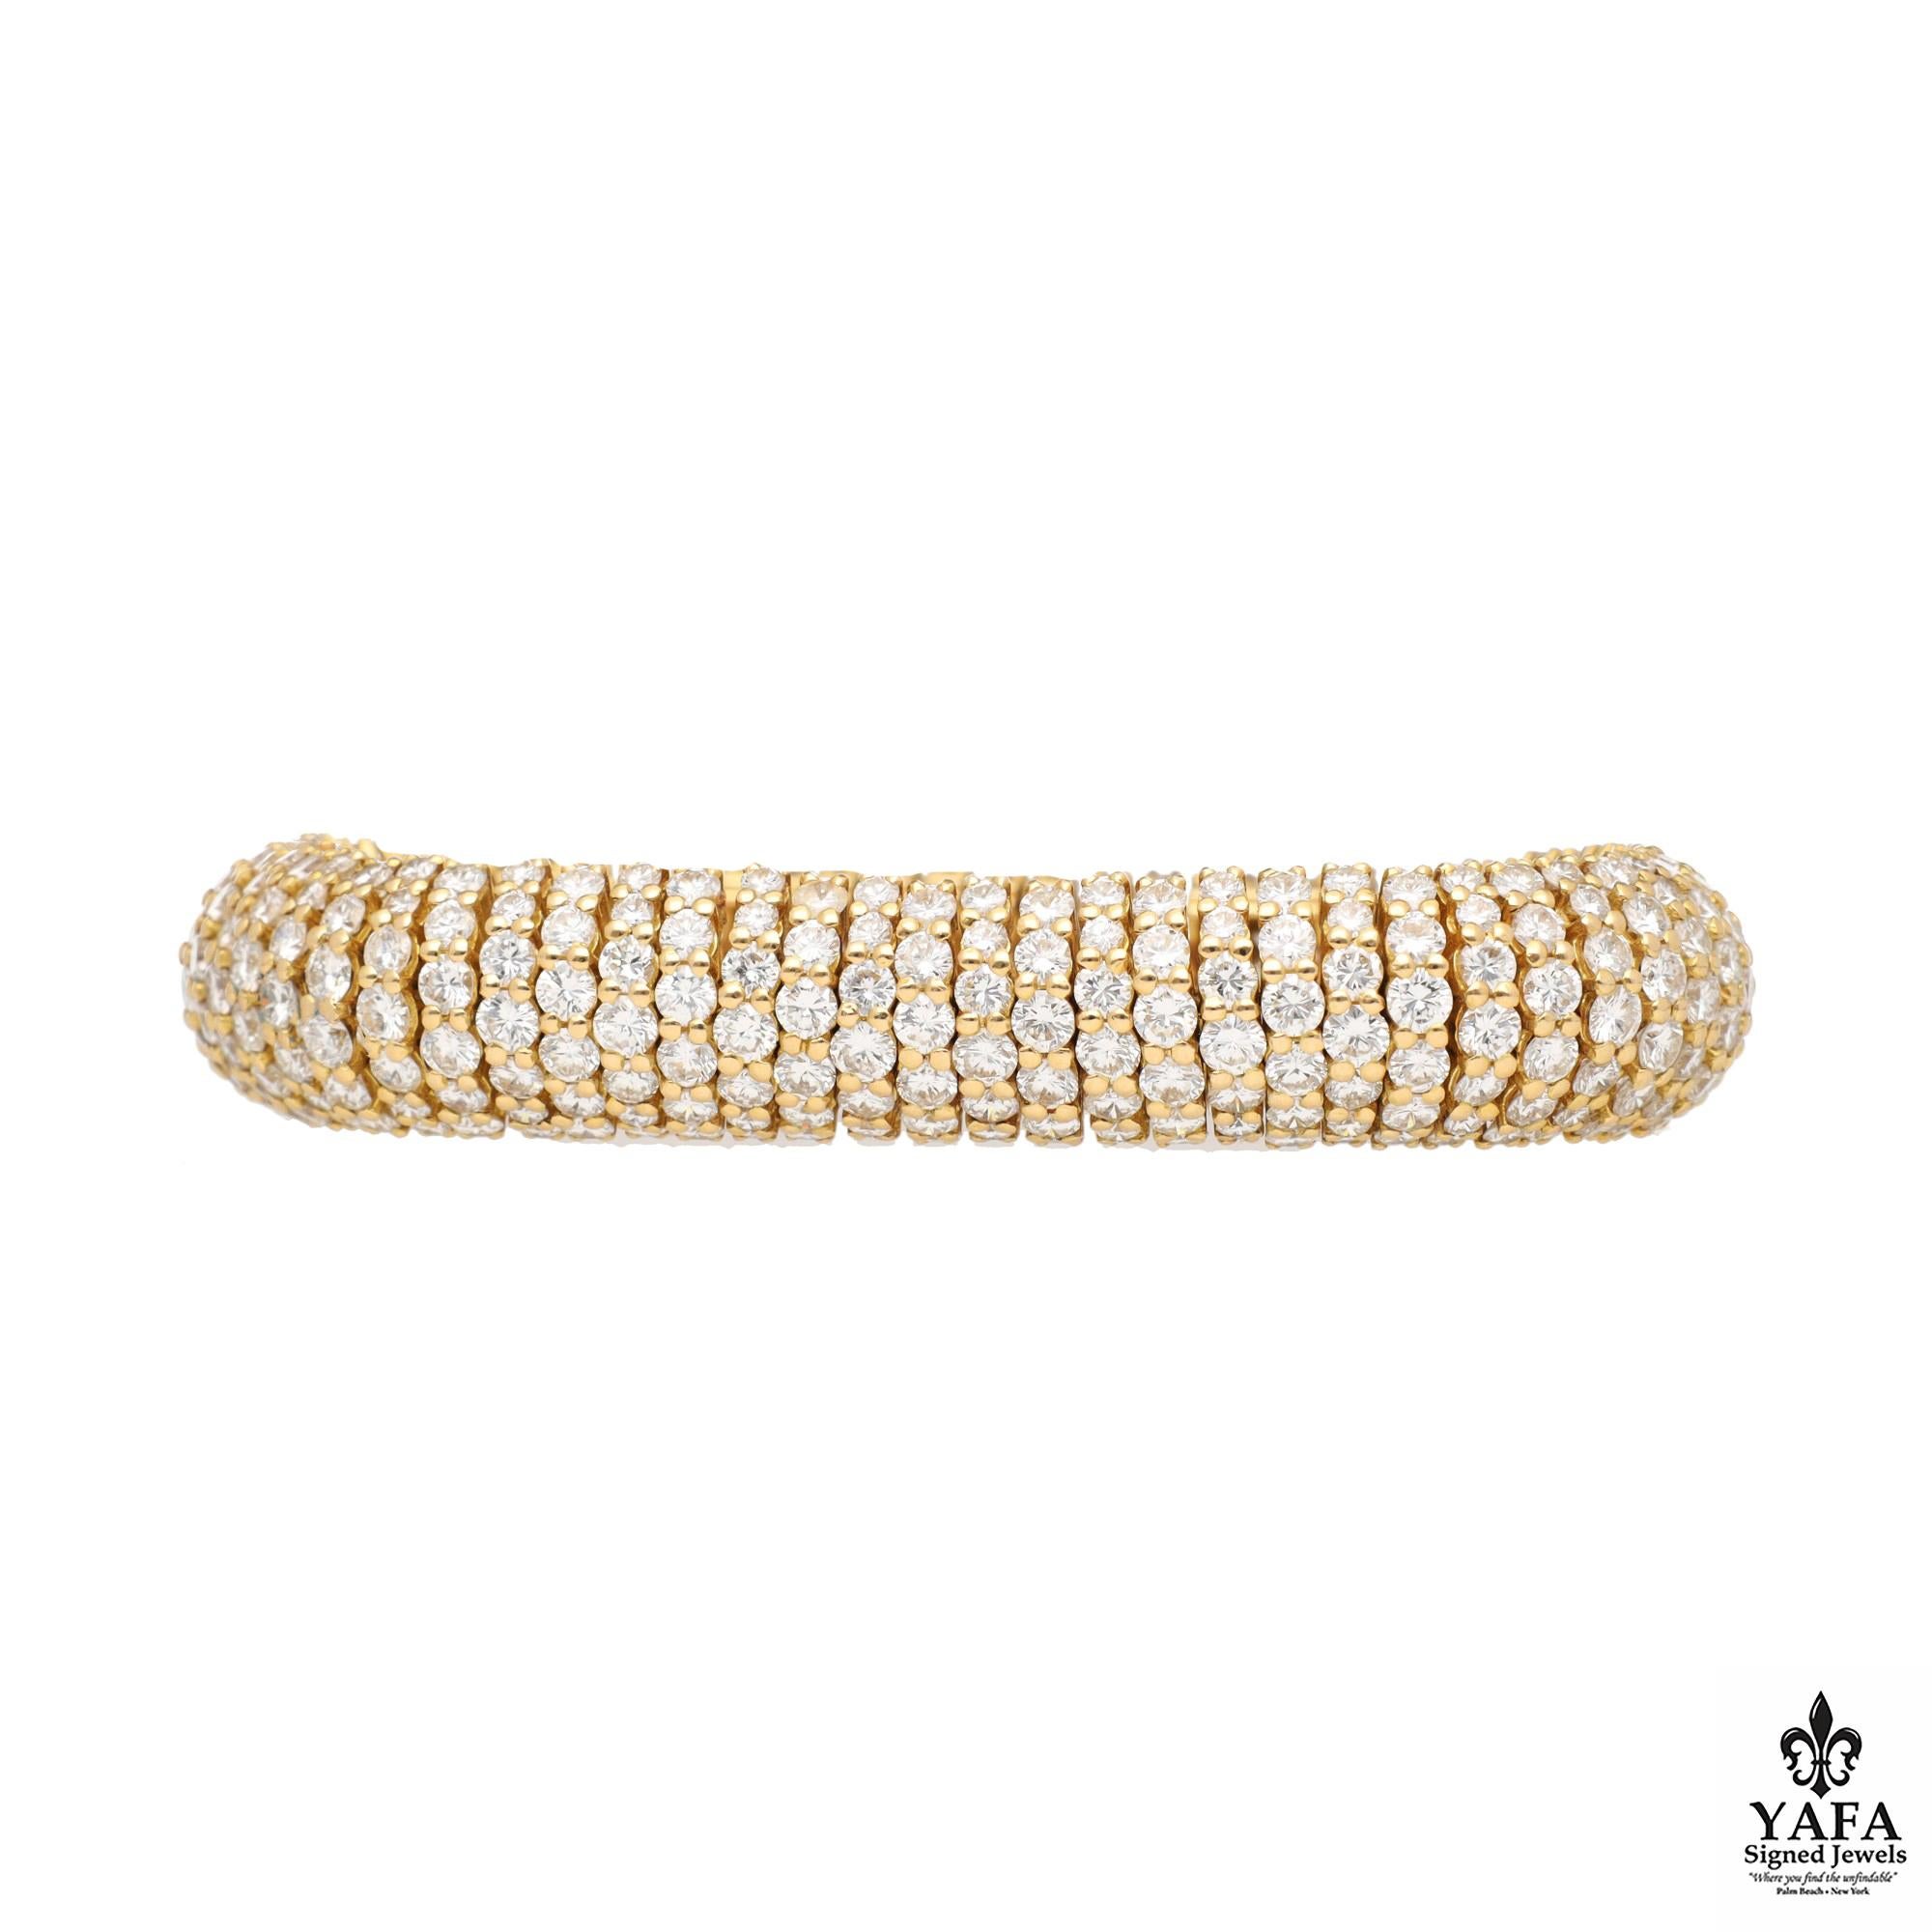 Boucheron 18k Gelbgold flexibles Diamantarmband. Das warme, glänzende Gold und die funkelnden Diamanten strahlen eine zeitlose Anziehungskraft aus, während die subtilen Details das unermüdliche Engagement von Boucheron für Exzellenz demonstrieren.